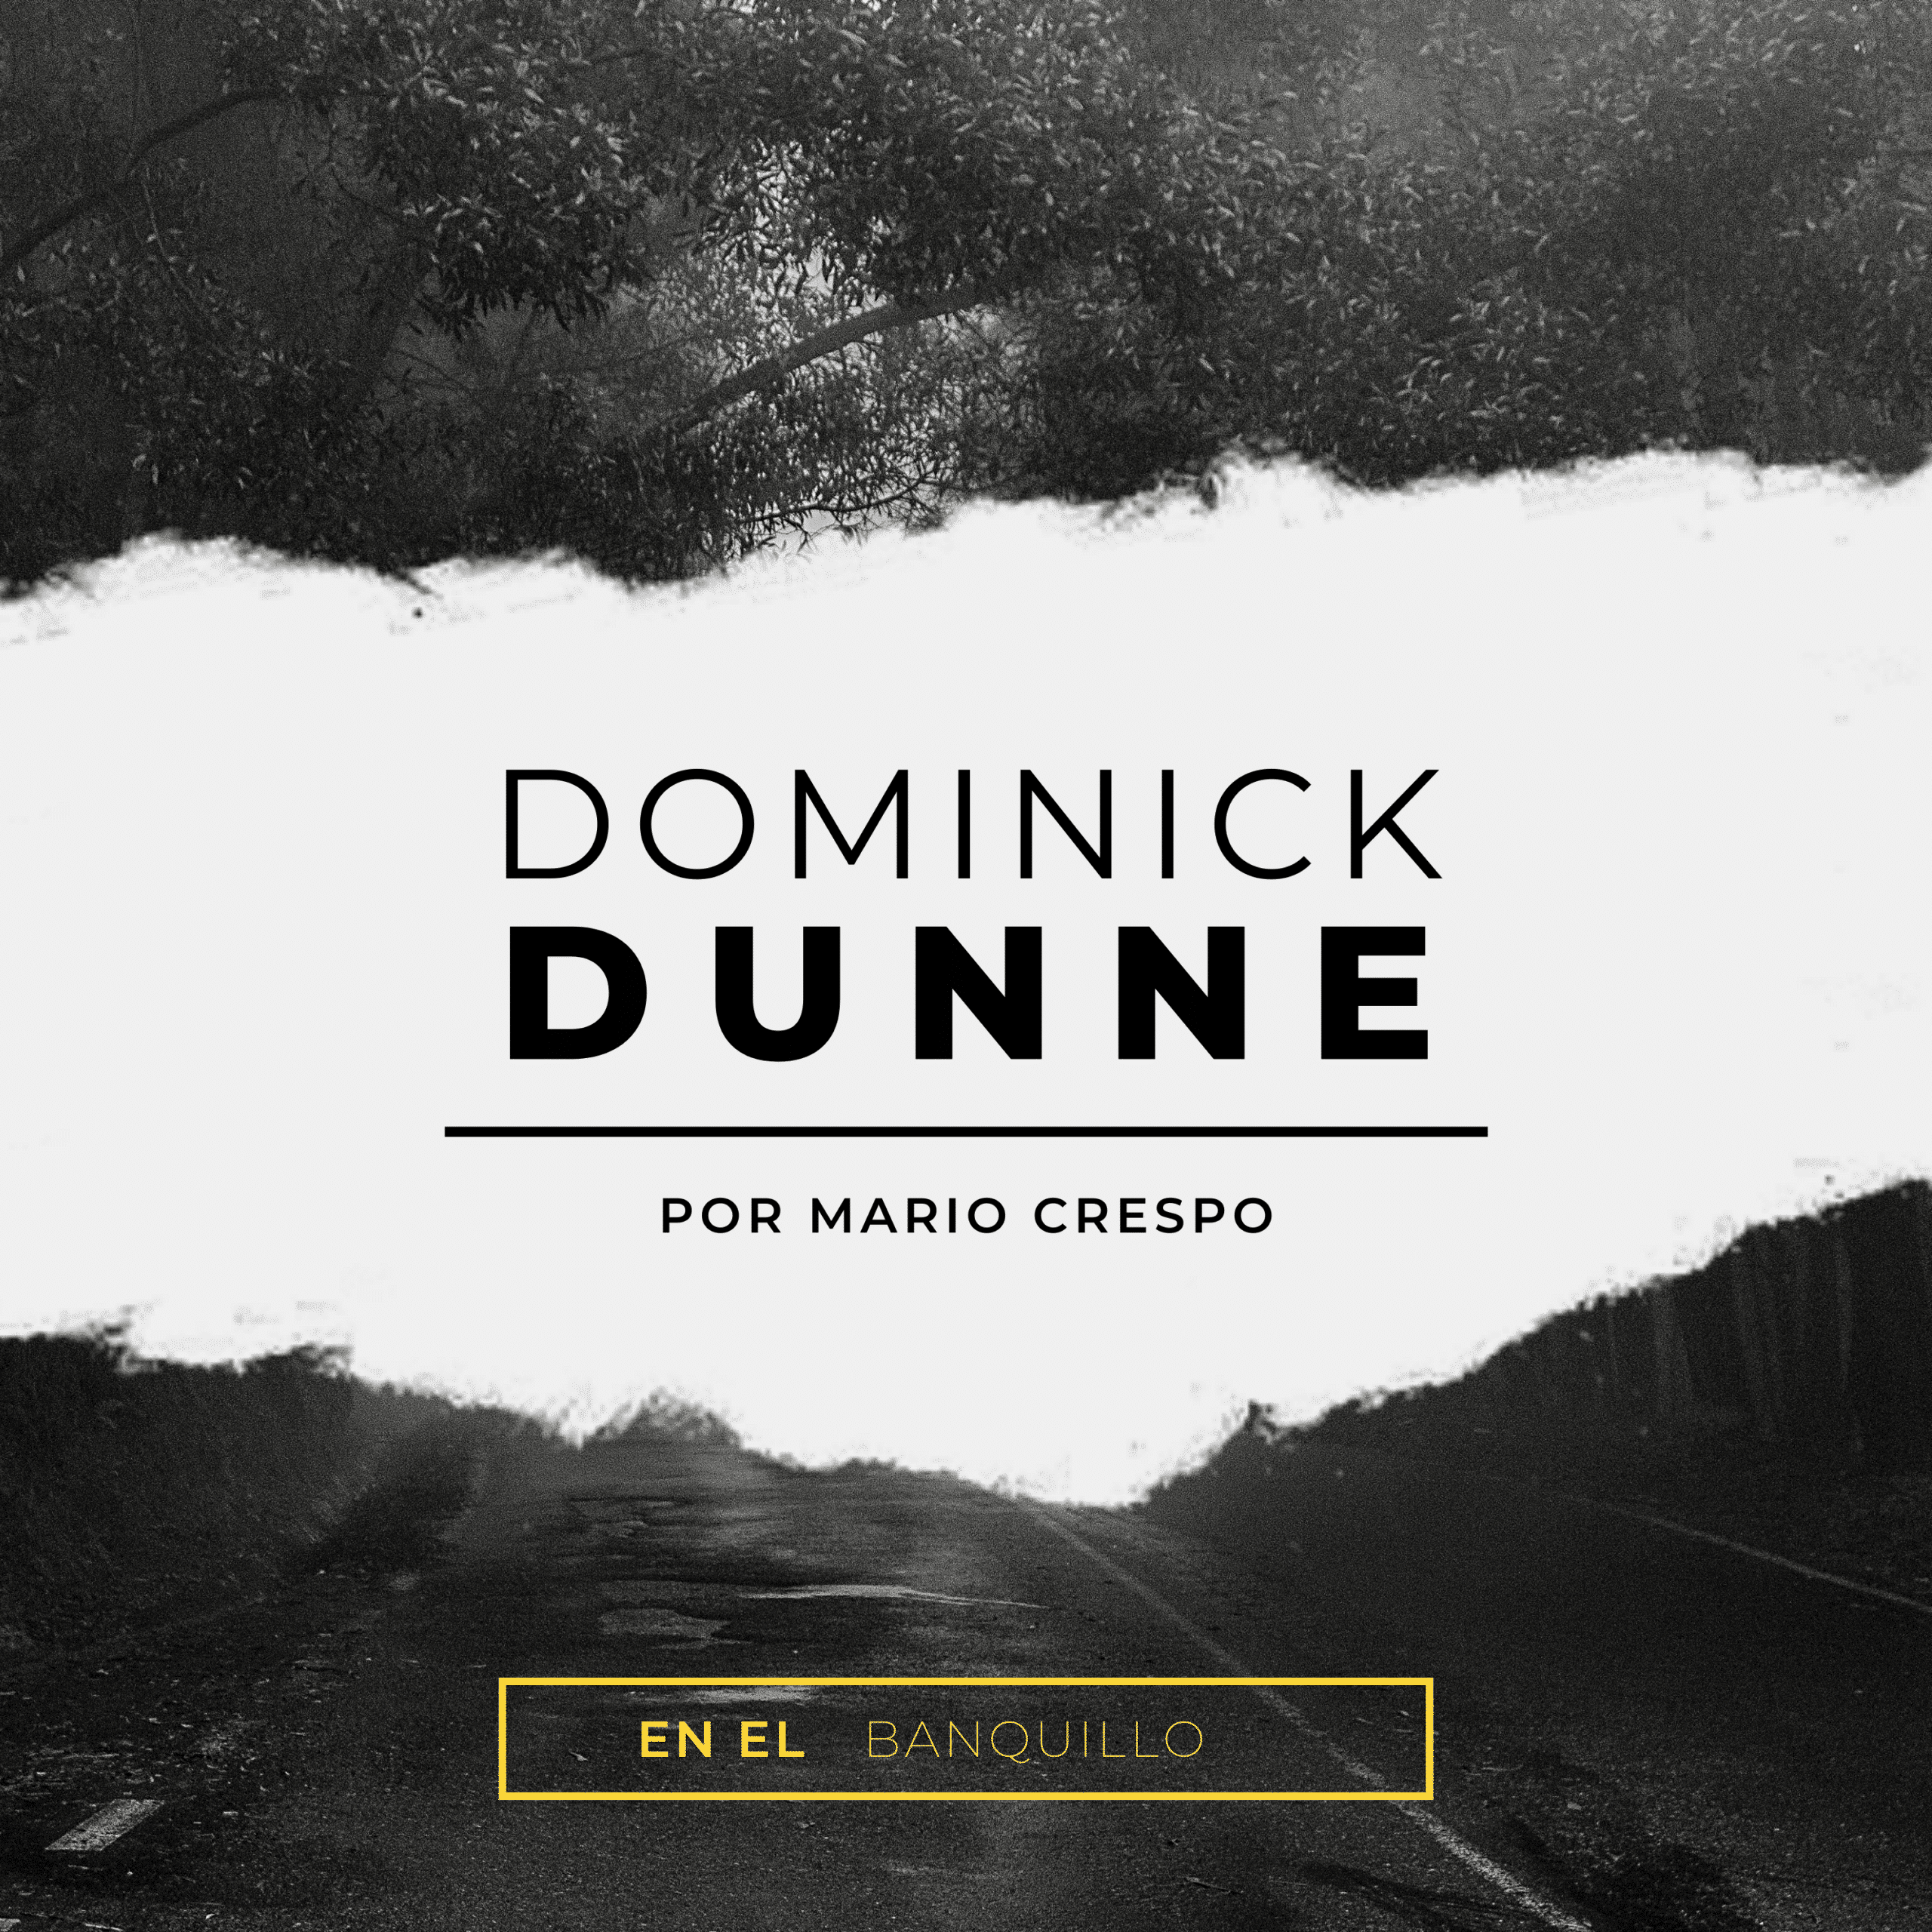 Dominick Dunne en el banquillo